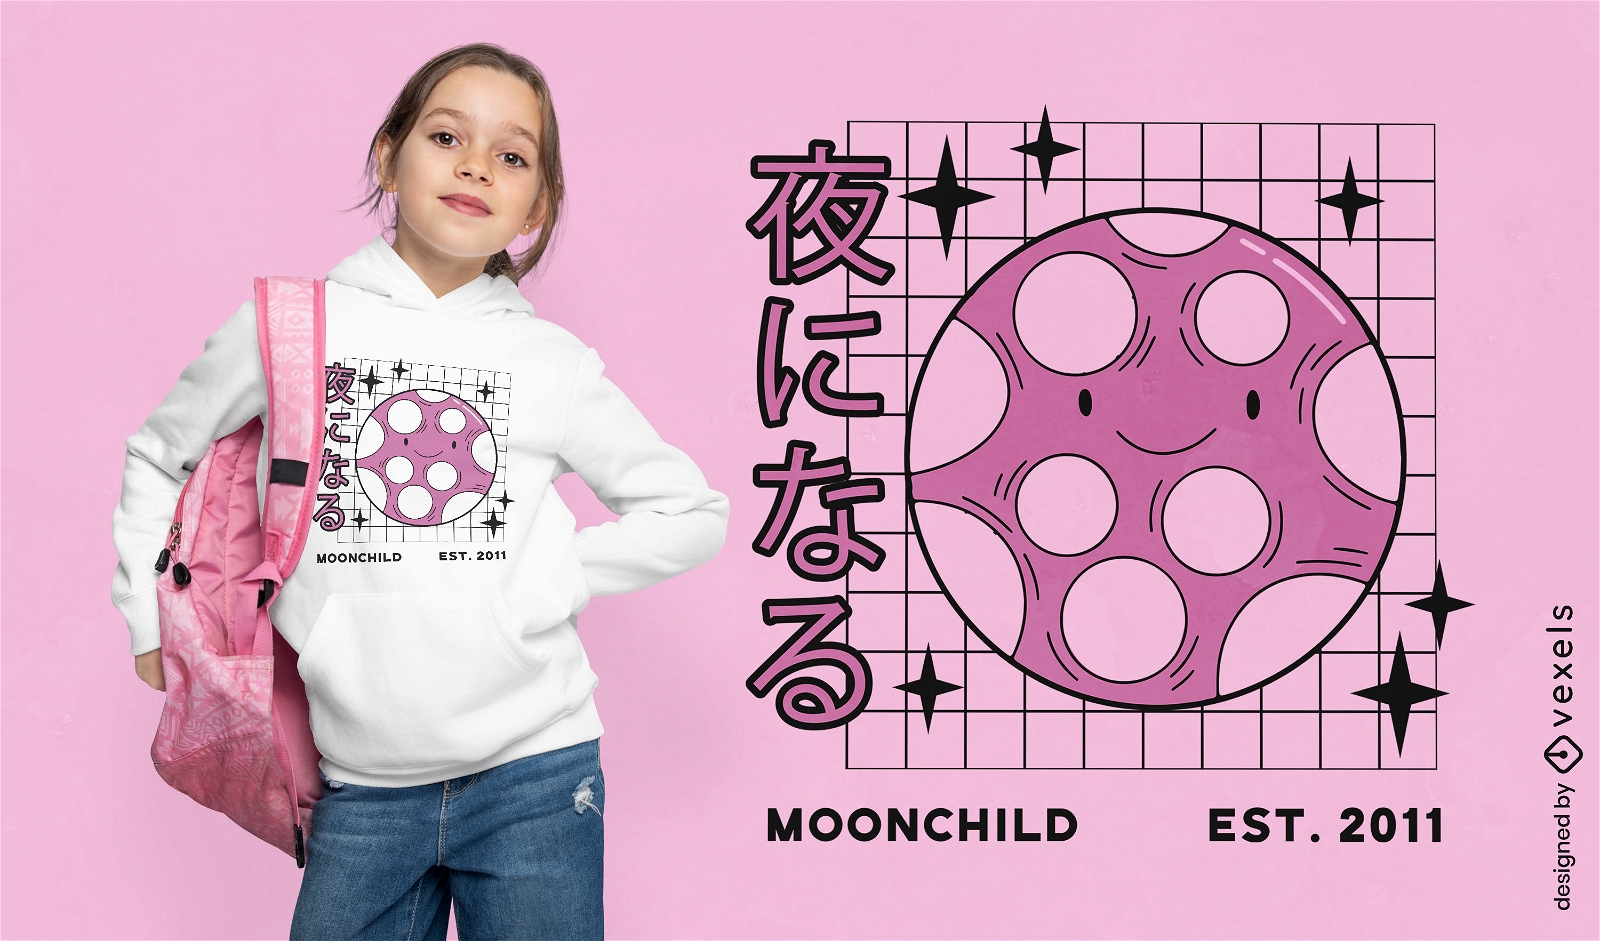 Moonchild süßes T-Shirt-Design